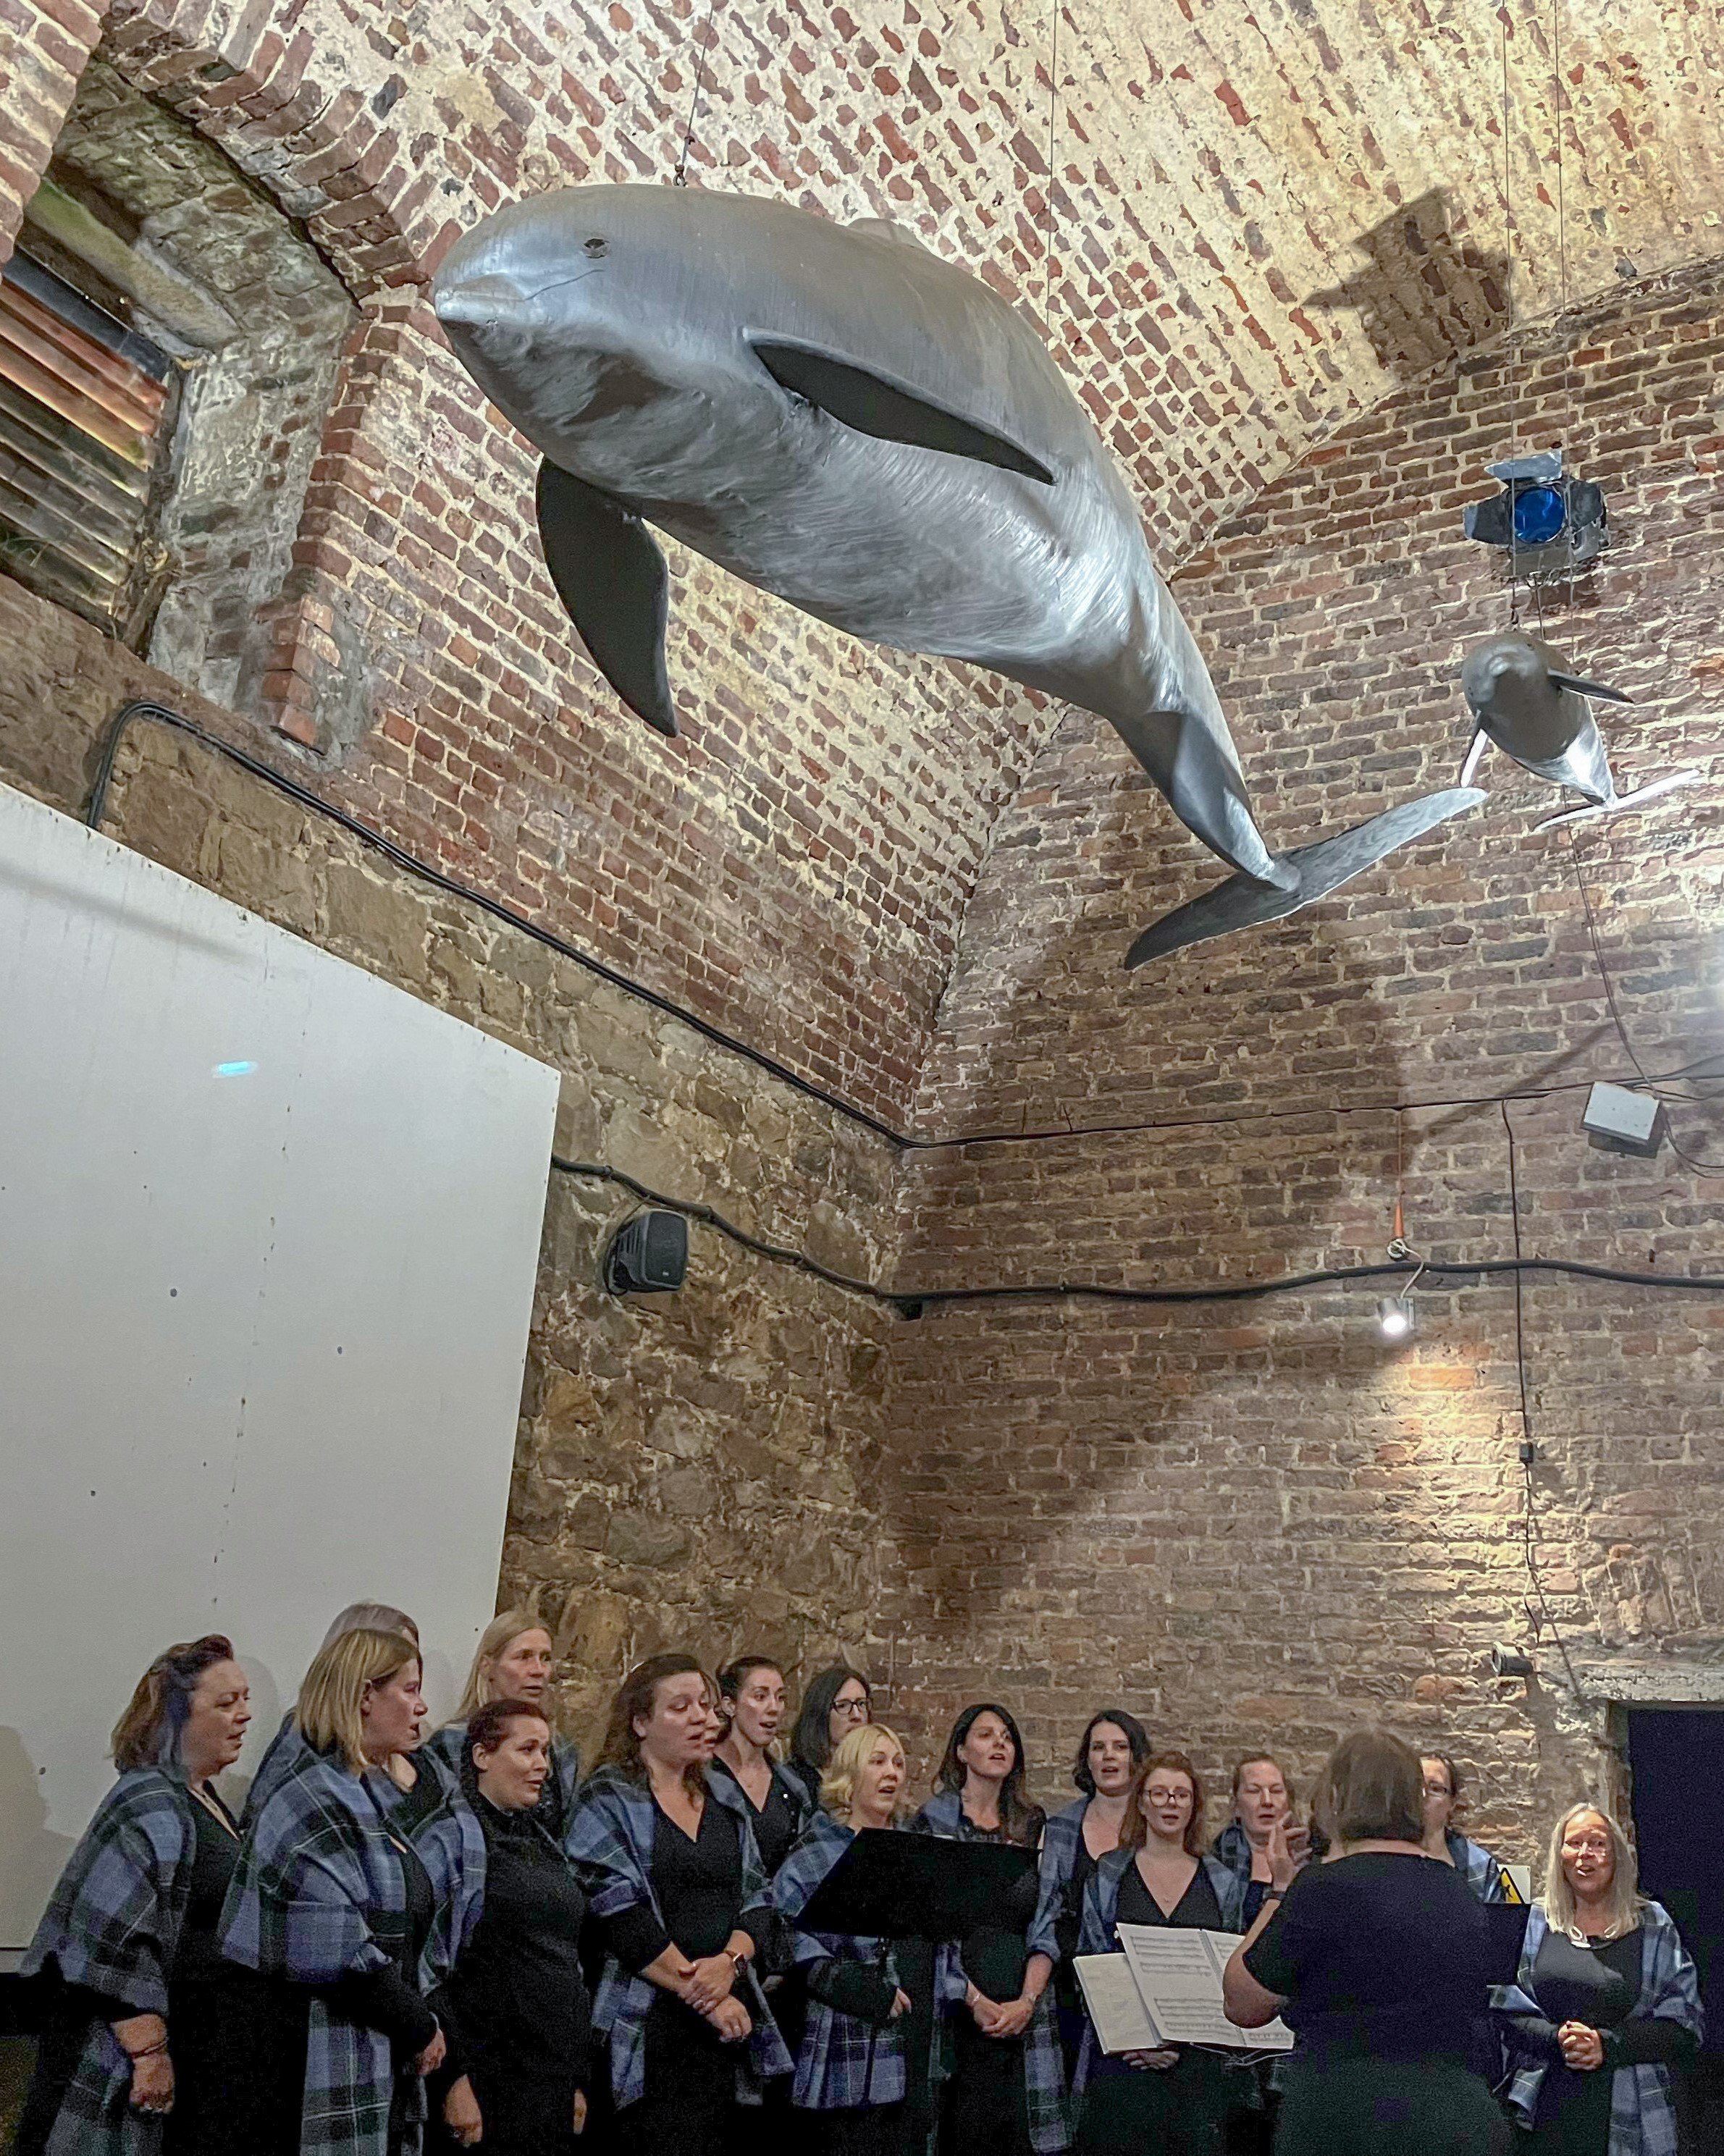 Choir with model Dolphin overhead